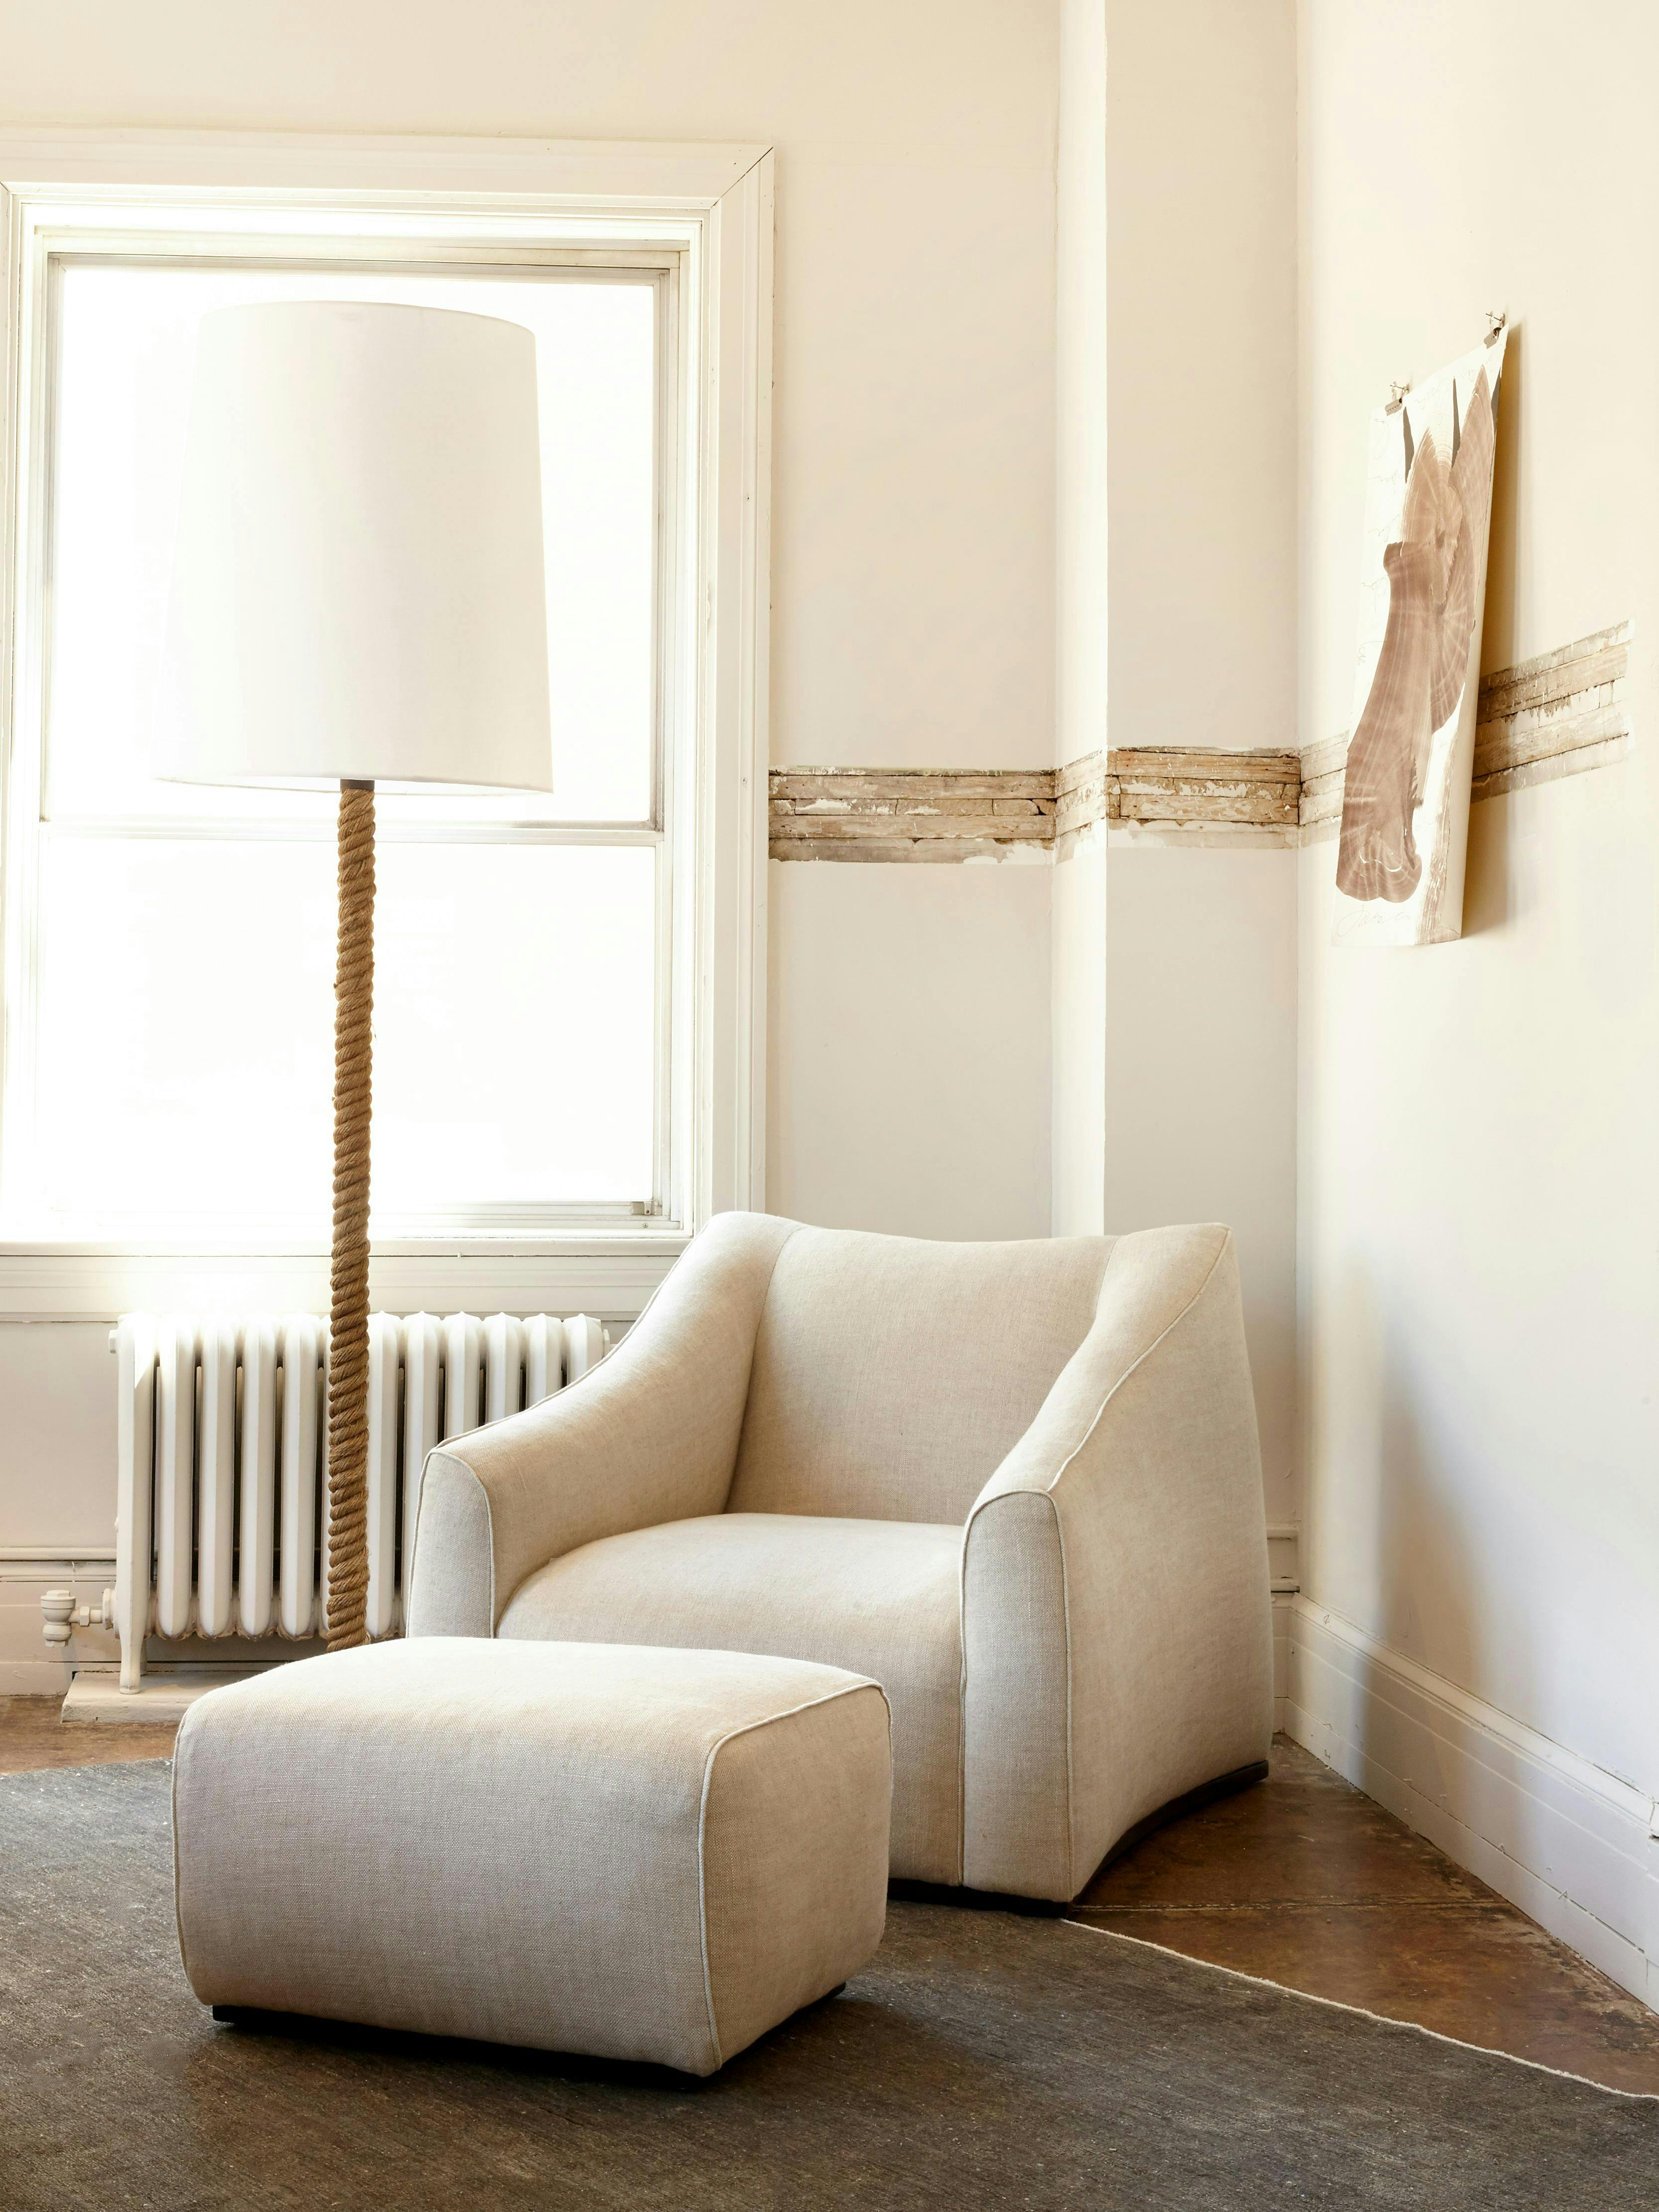 Cisco Home, home decor, home furniture photography, neutrals home decor, neutral home photography 